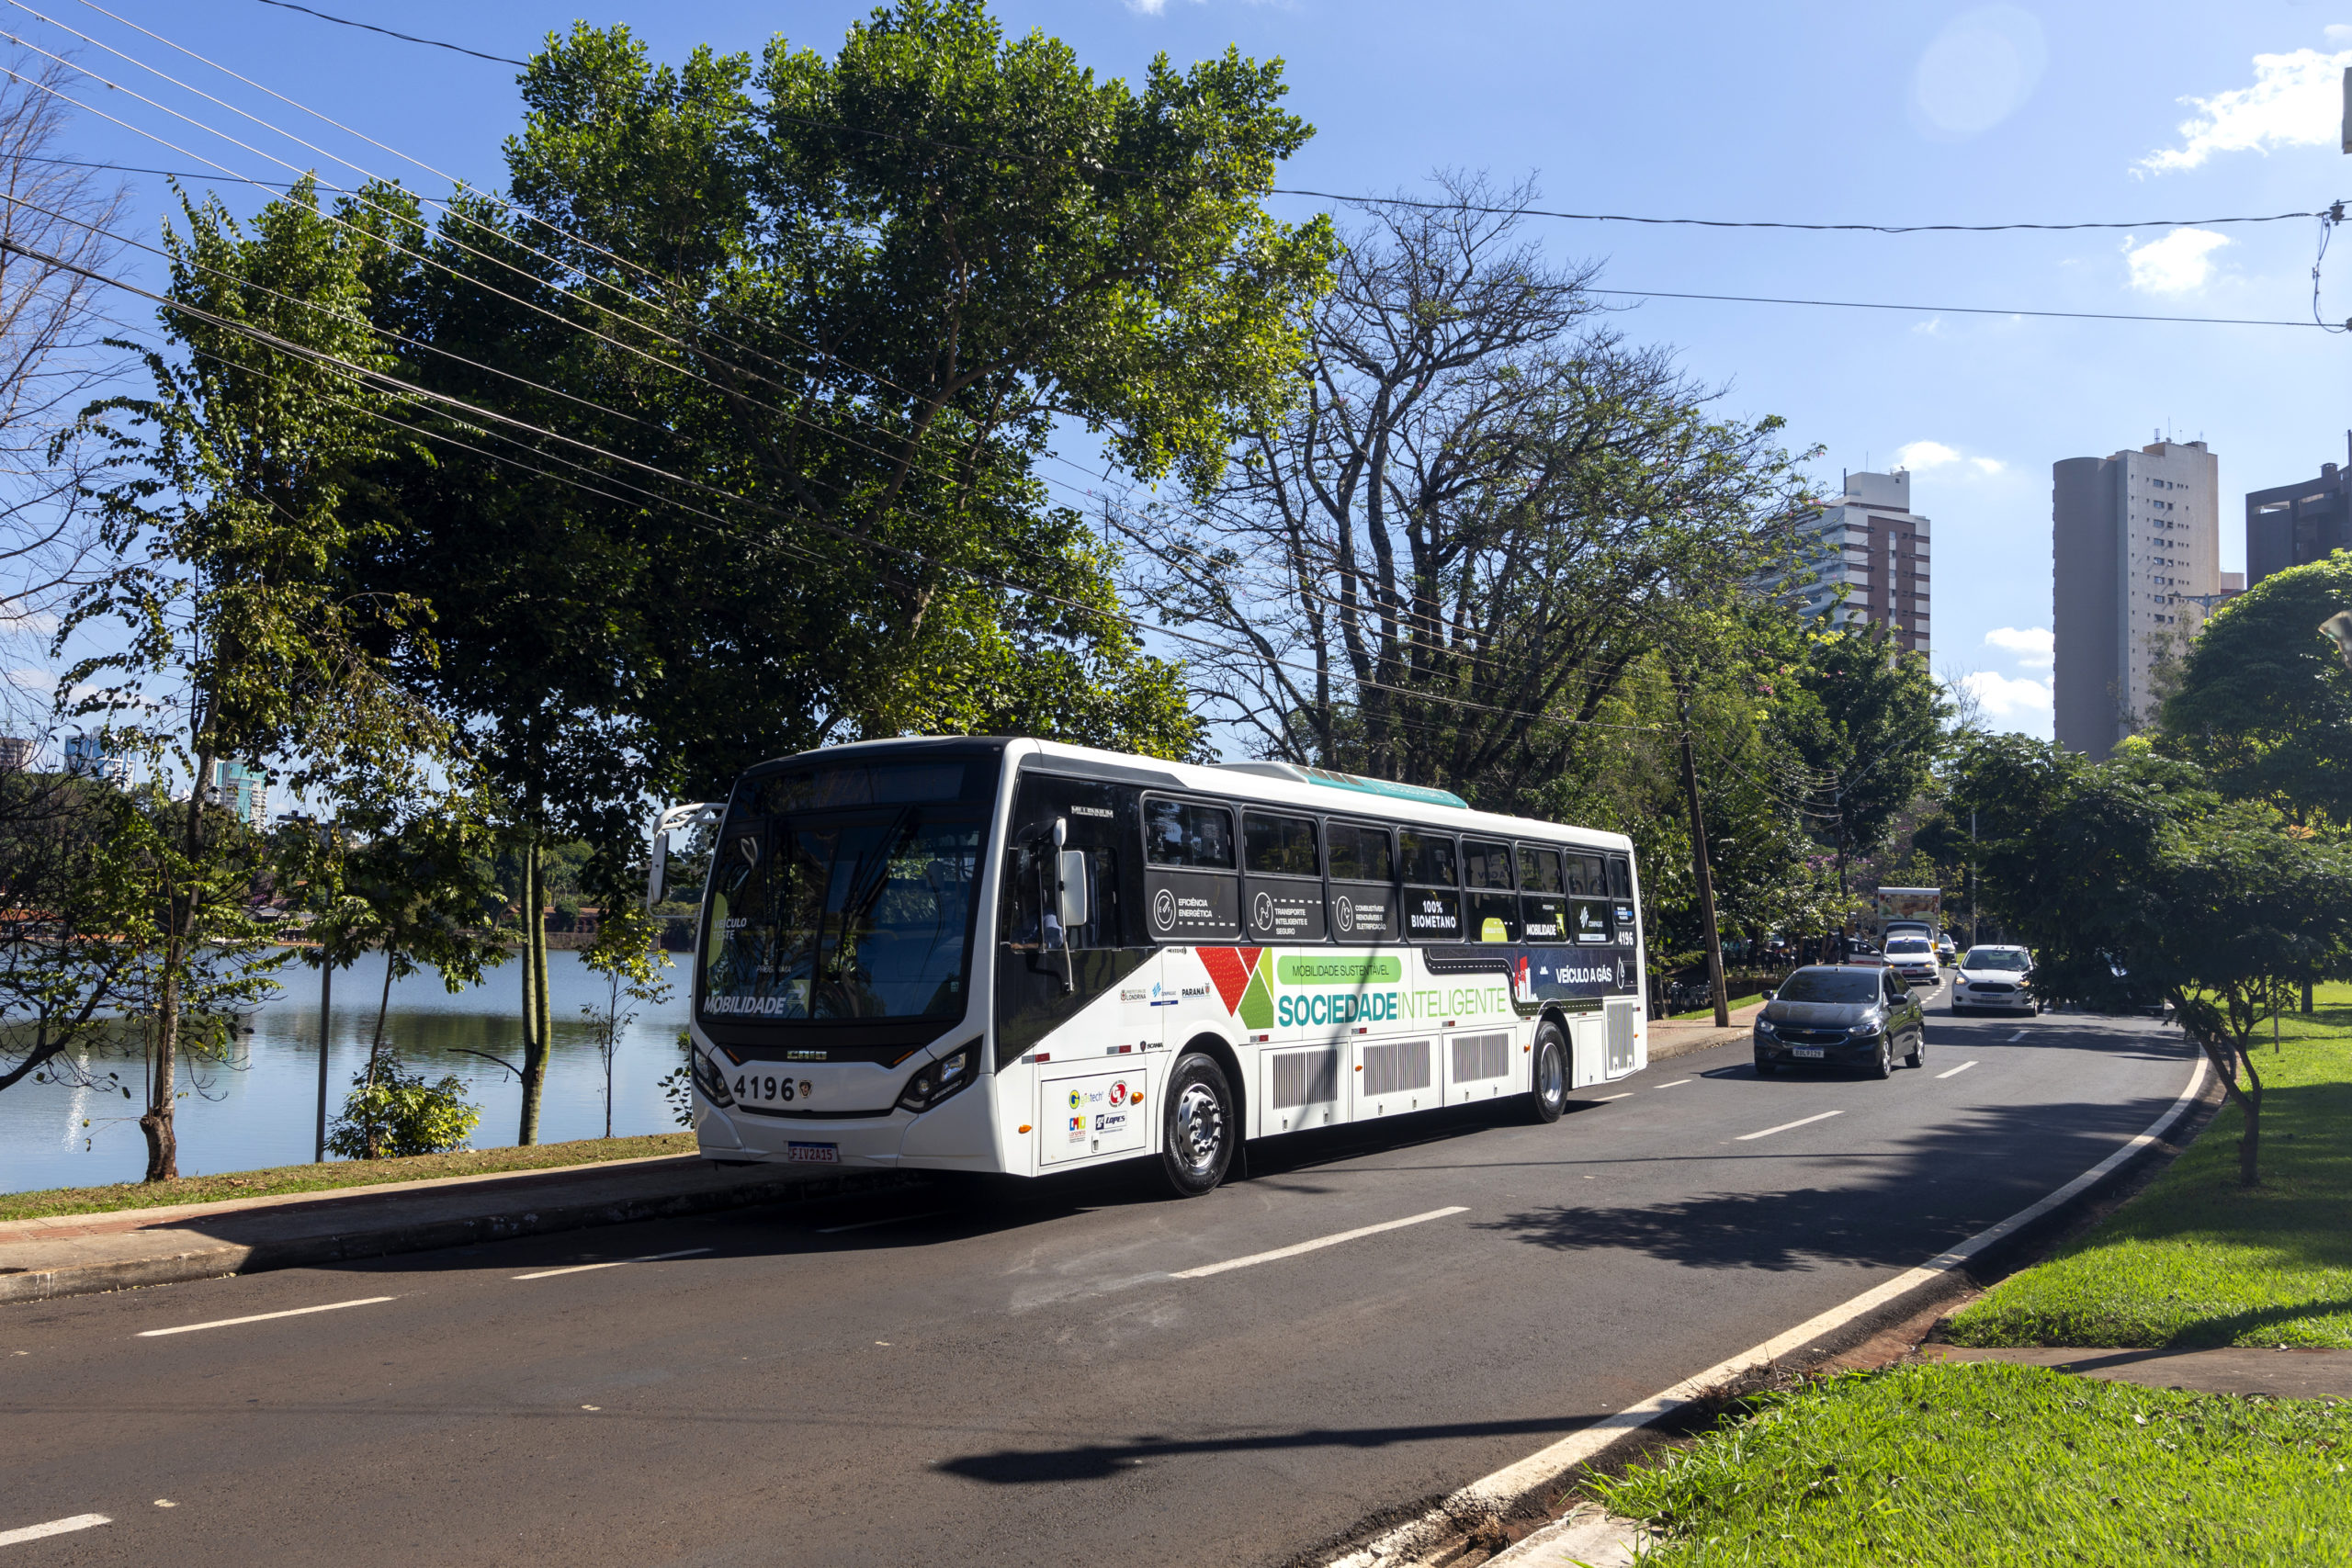 Londrina inicia testes com ônibus urbano movido 100% a biometano. Na imagem: Londrina (PR) testa ônibus 100% a biometano (Foto: Cortesia Compagas)